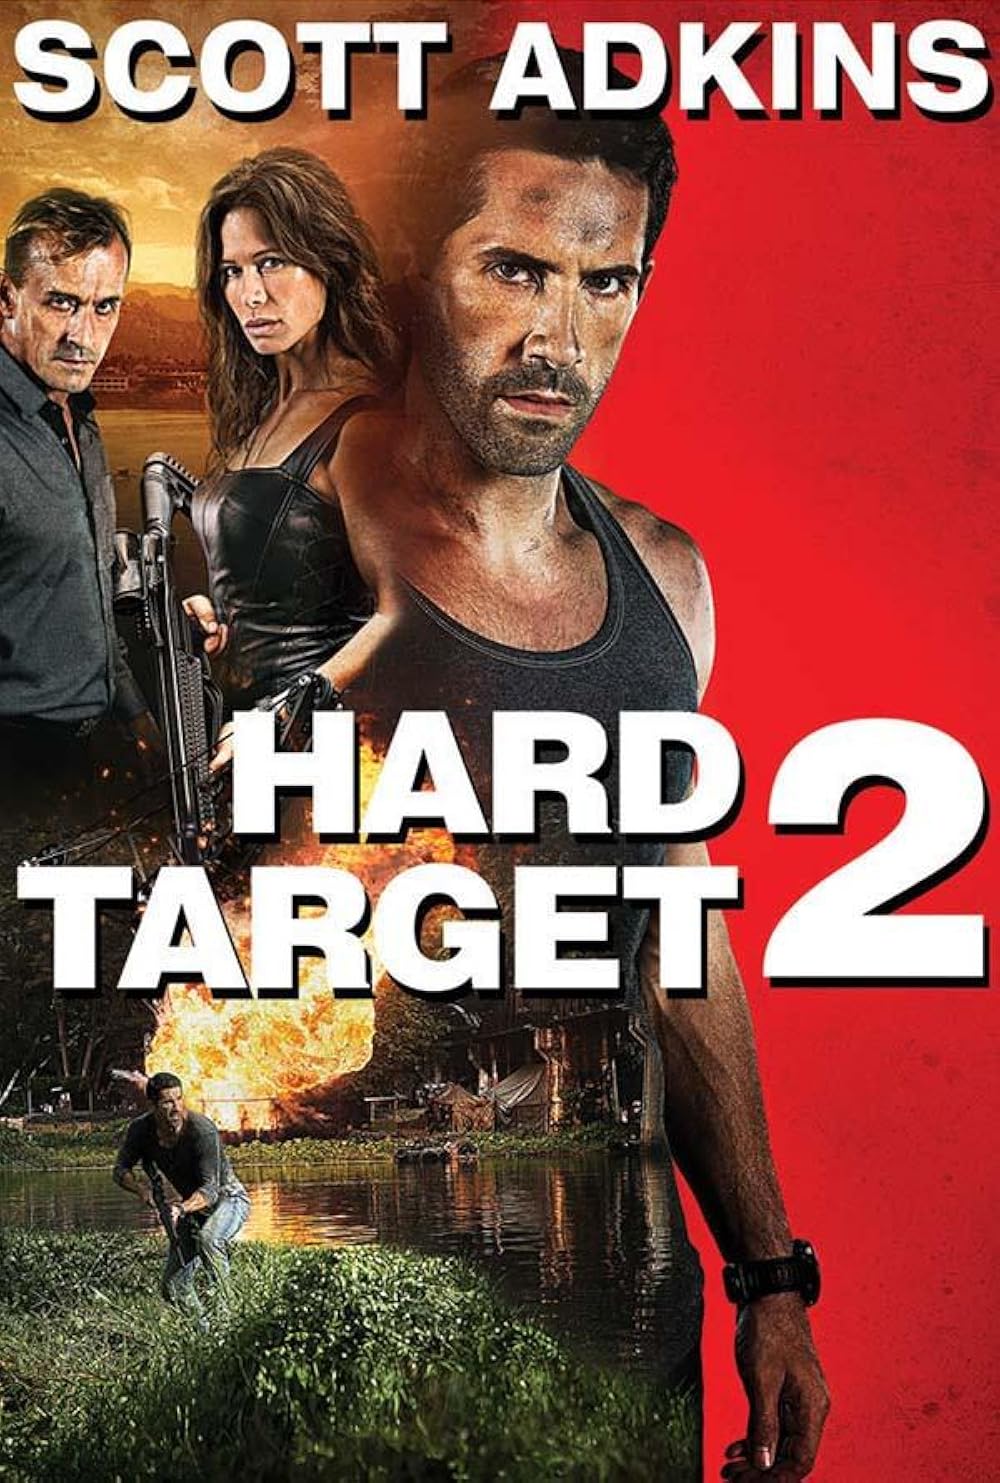 hard target 2 full movie download 480p